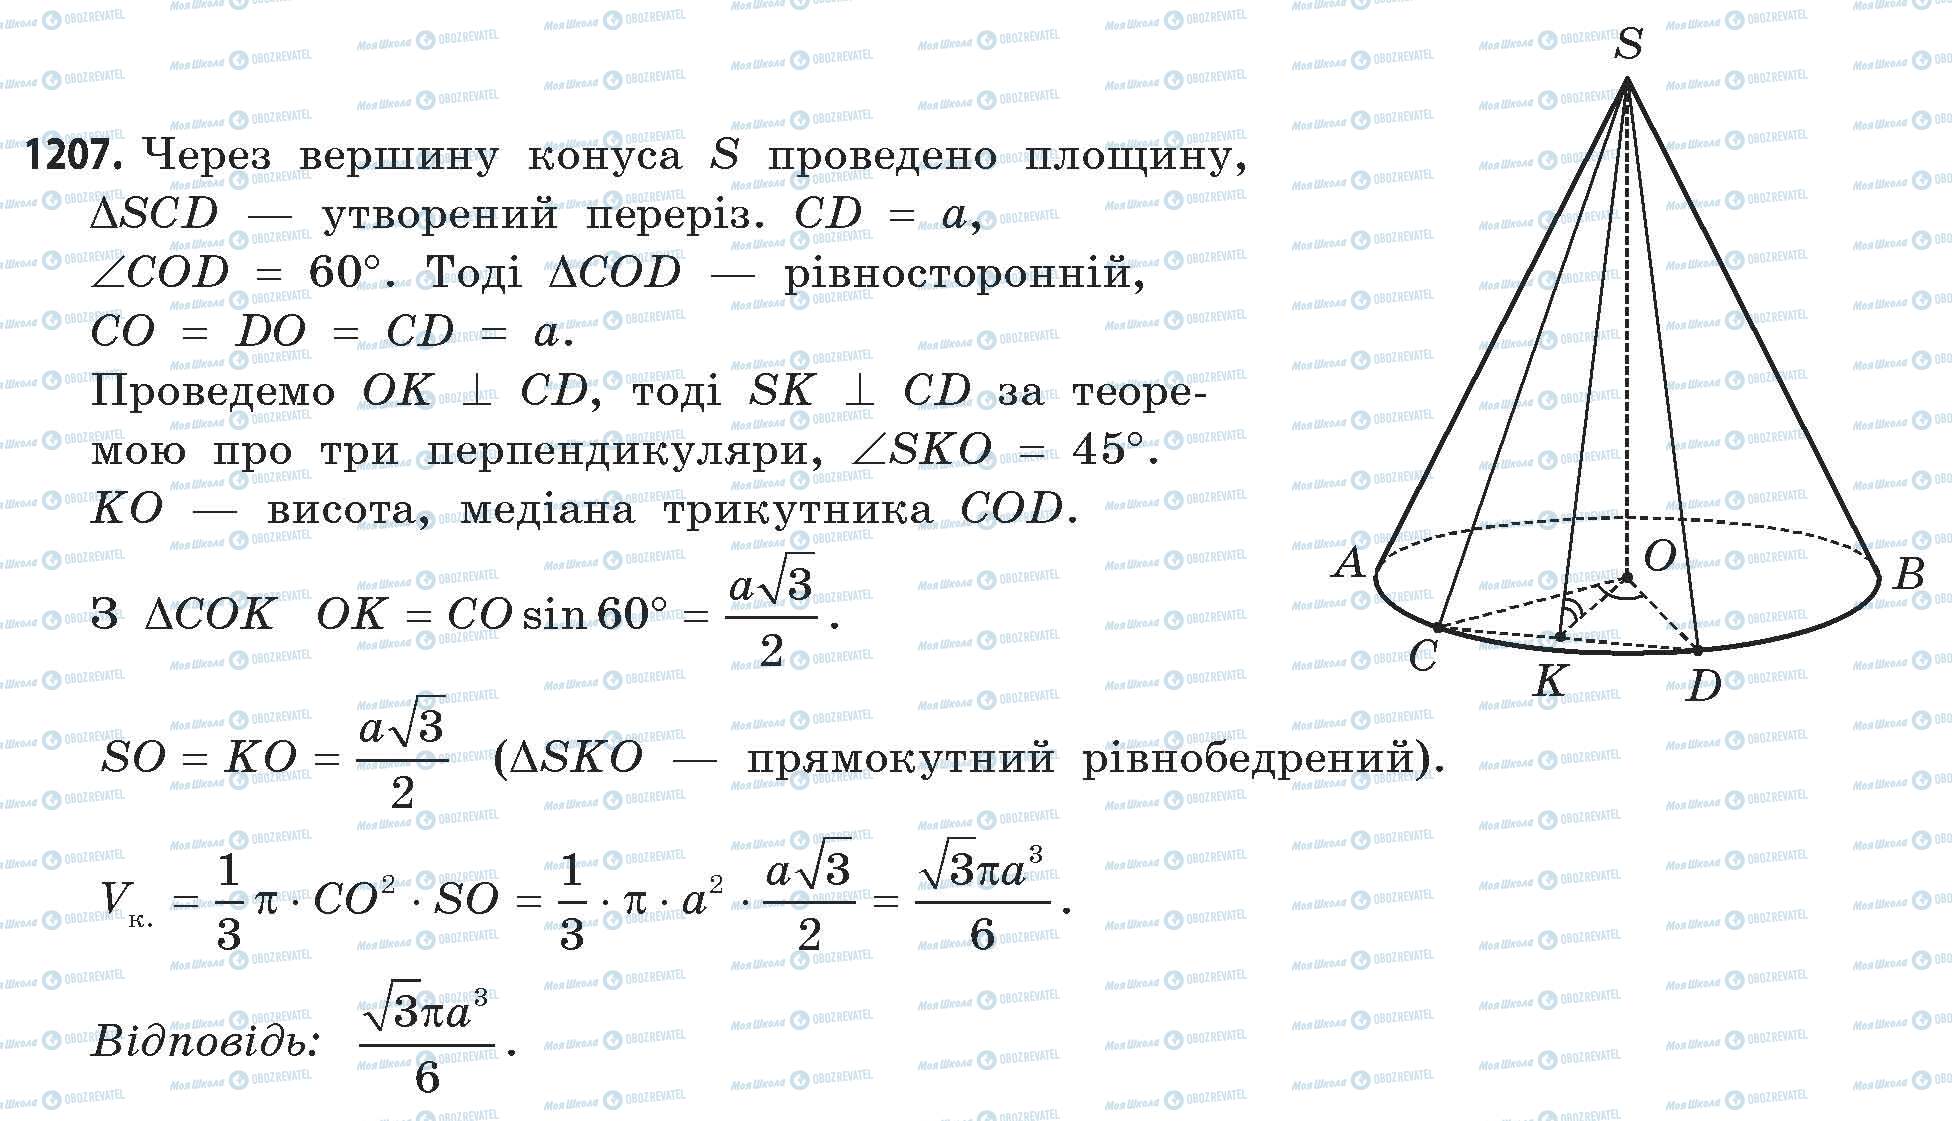 ГДЗ Математика 11 класс страница 1207